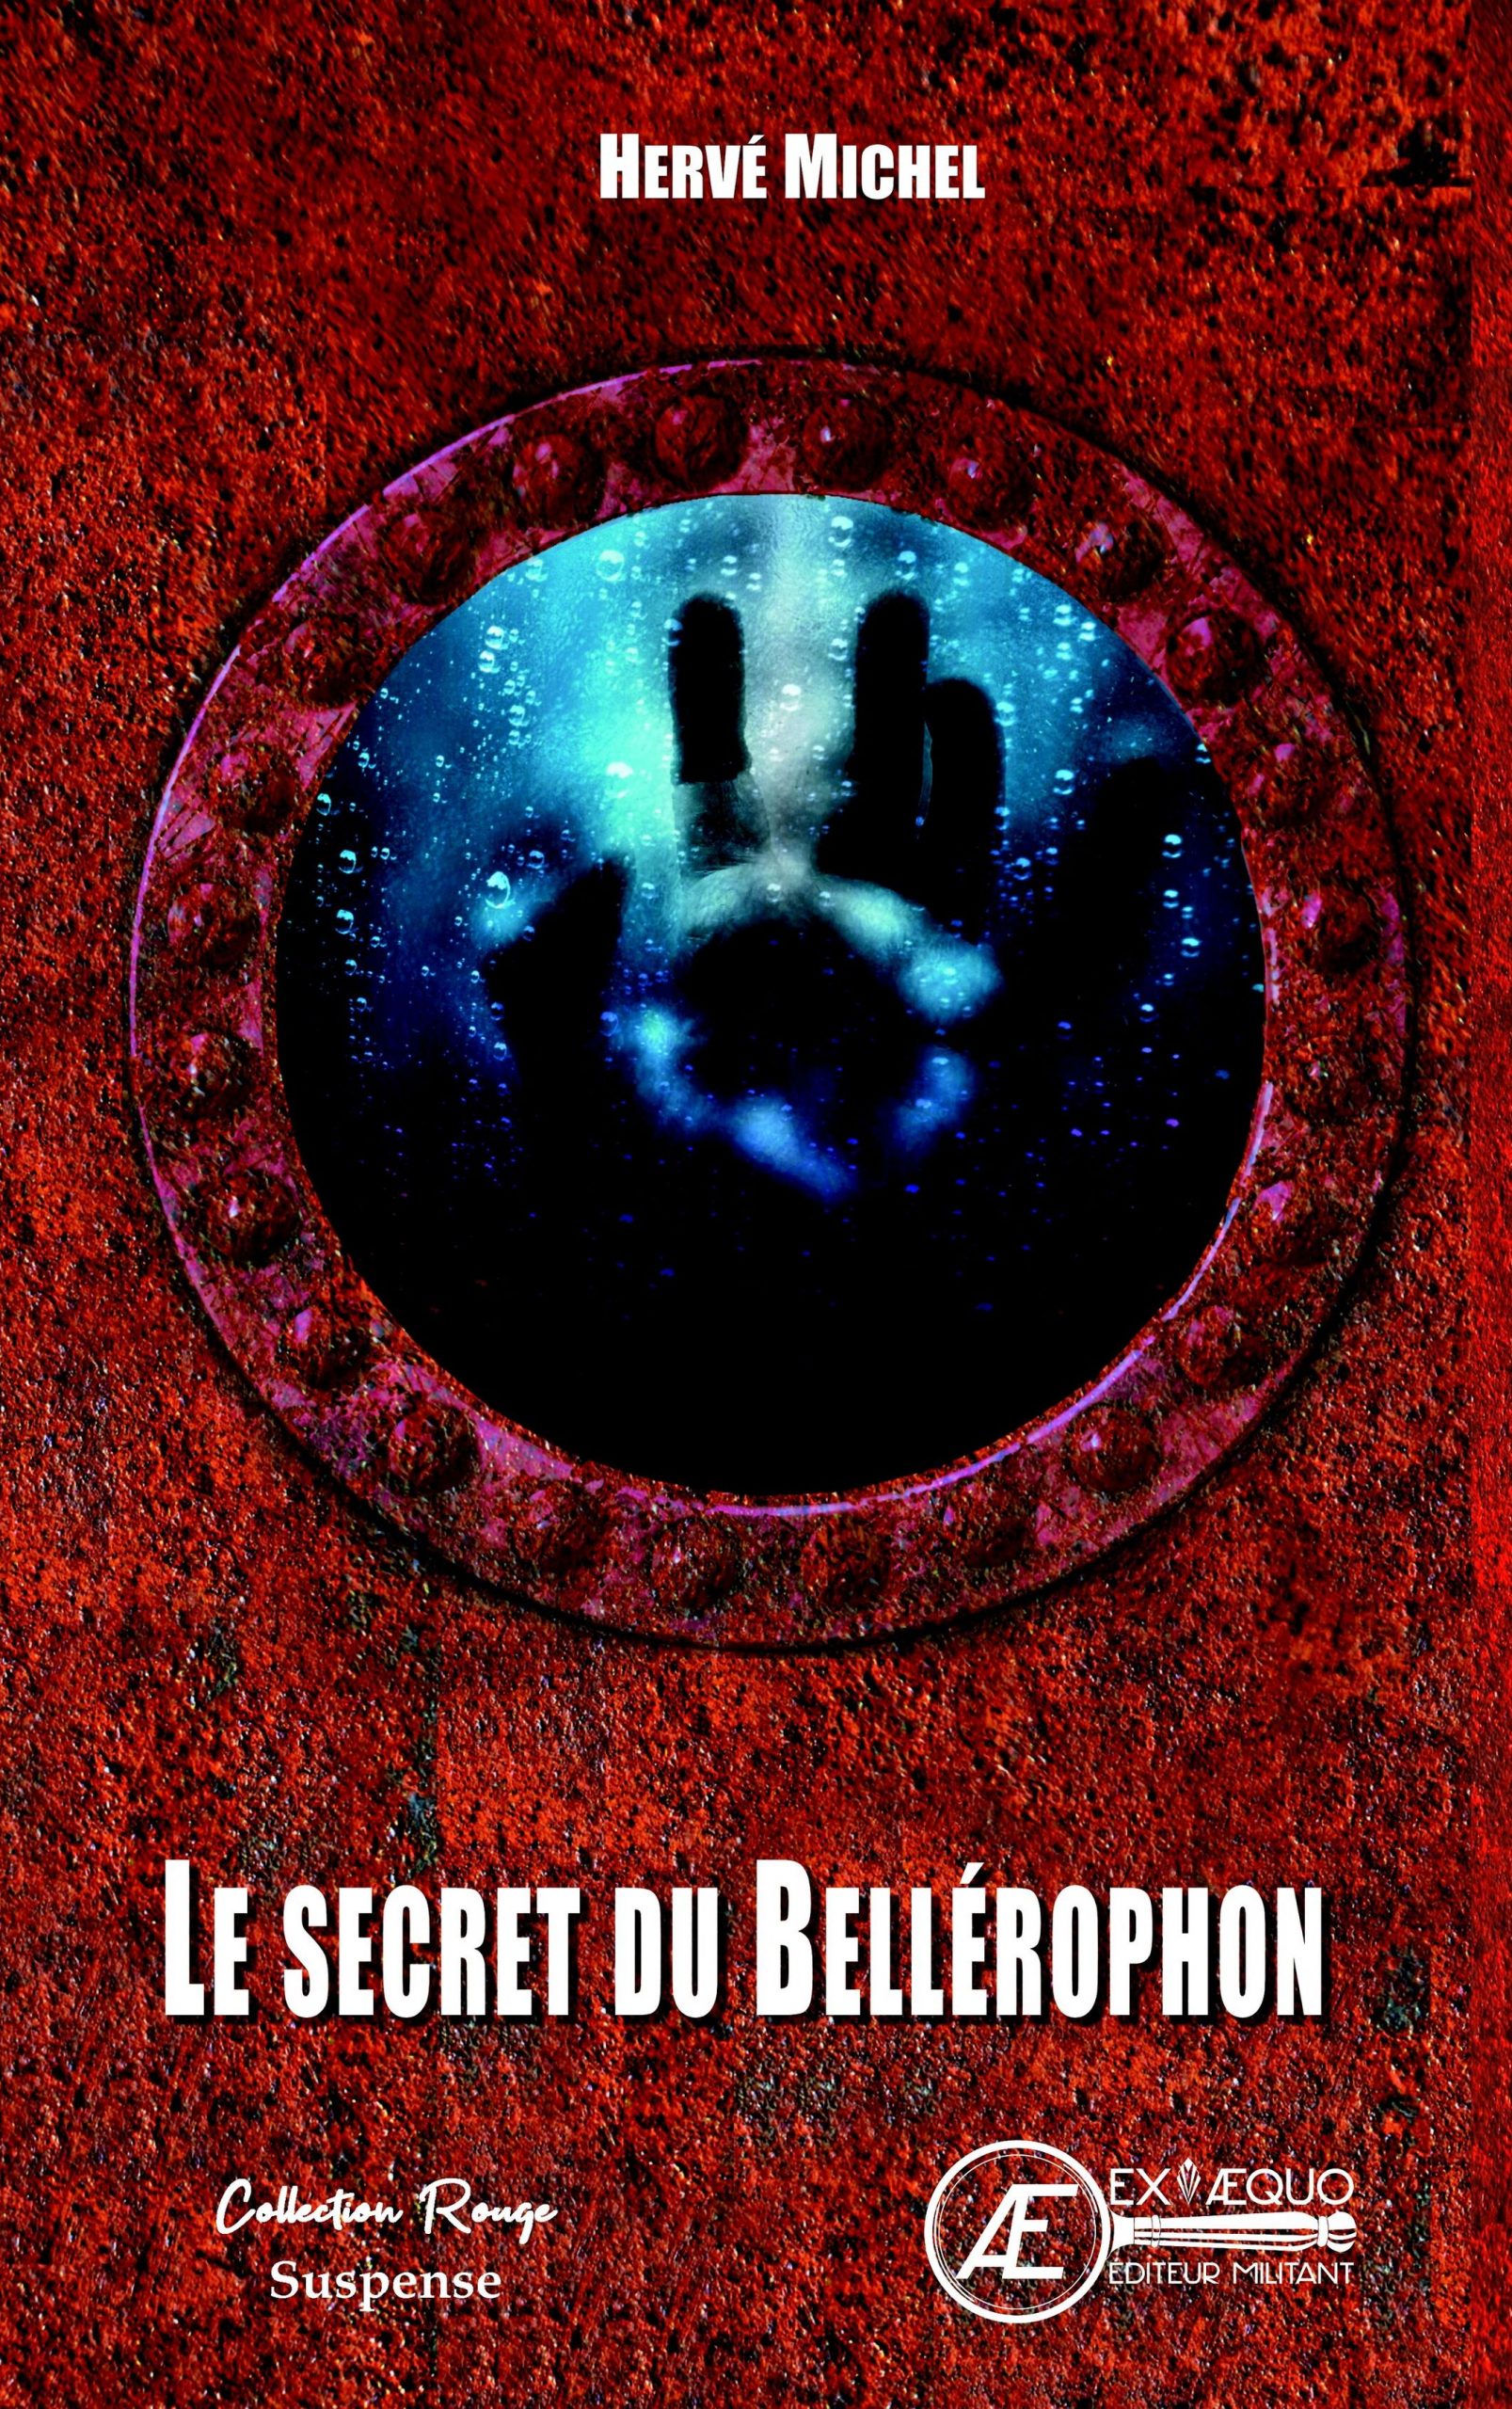 You are currently viewing Le secret du Bellerophon, d’Hervé Michel